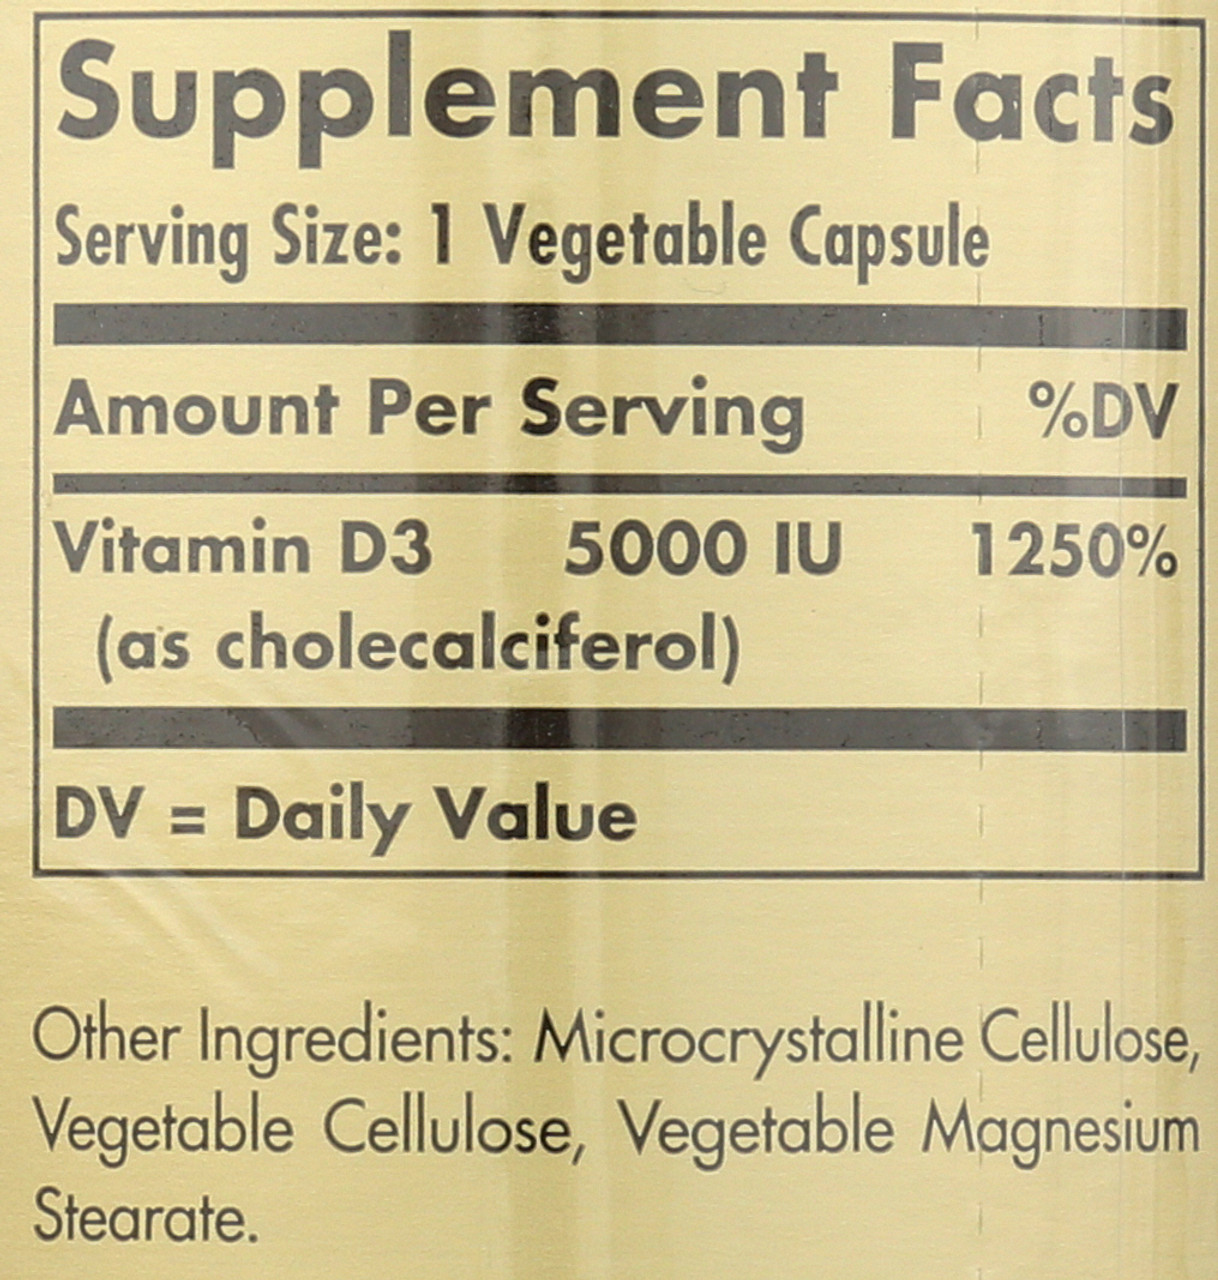 Vitamin D3 Cholecalciferol 5000 IU 240 Vegetable Capsules